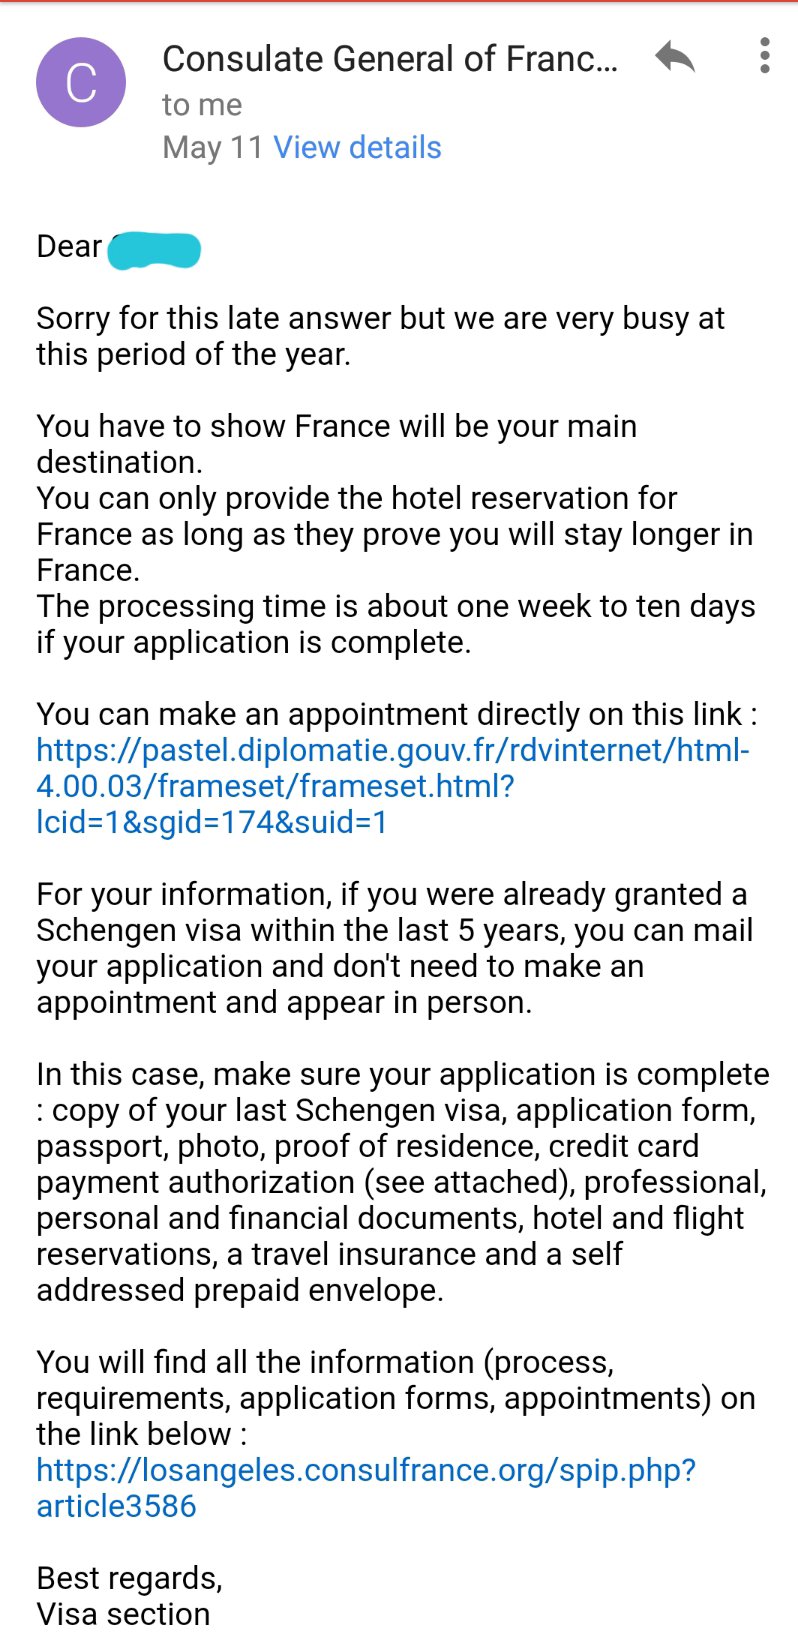 Applying for a Schengen visa (Part 3)